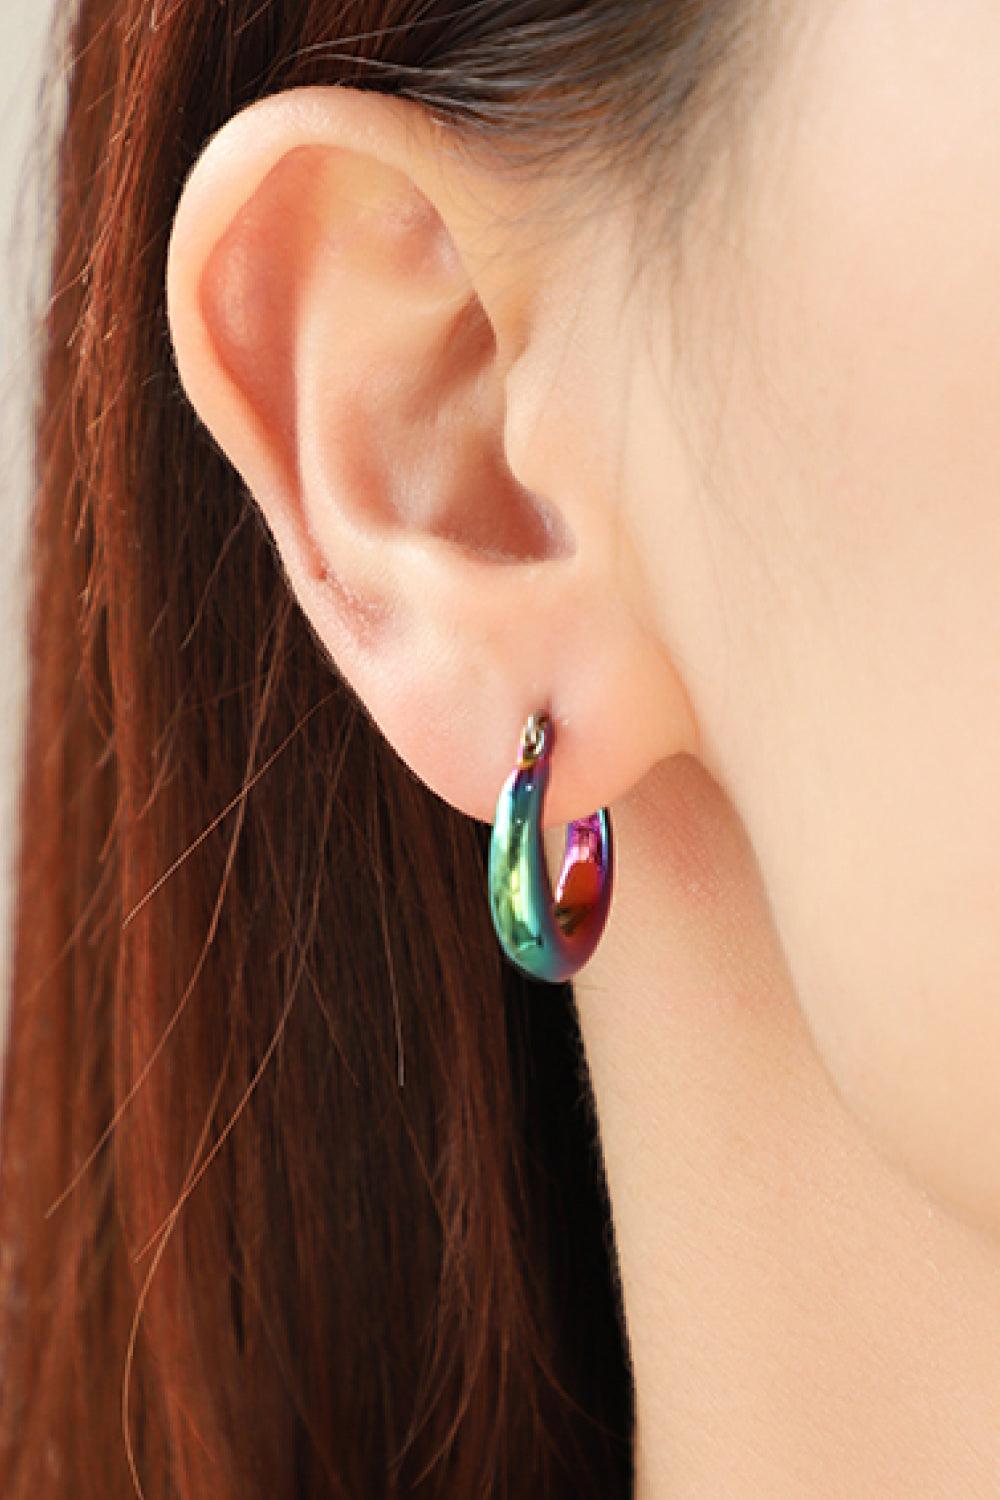 Darling Heart Multicolored Huggie Earrings - Trendha